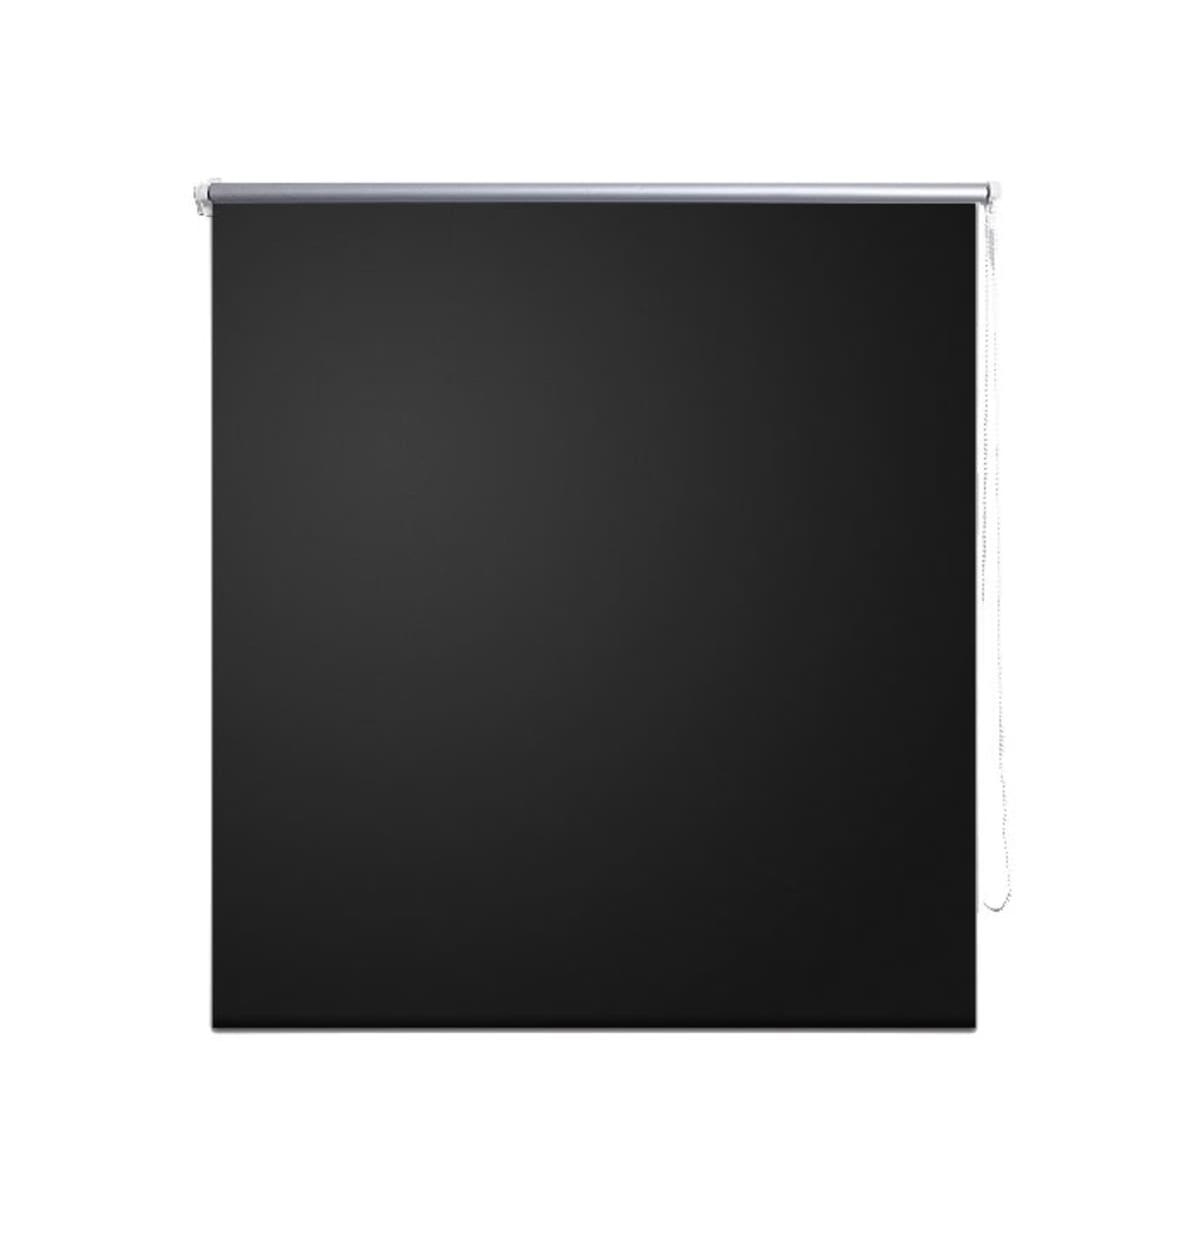 Roller blind Blackout 39.4"x68.9" Black - Black